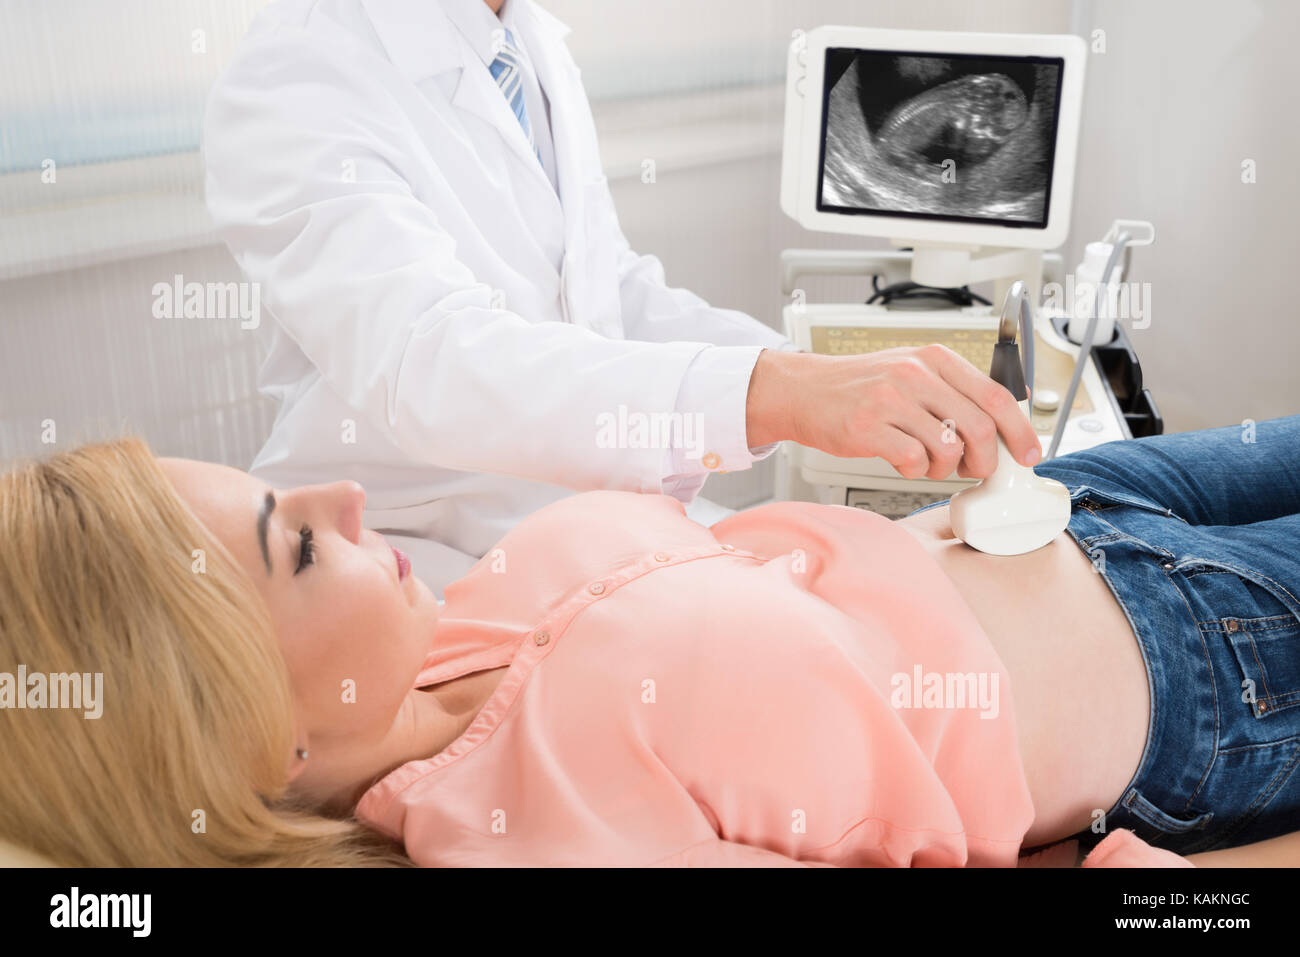 Immagine ritagliata del medico maschio muovendo il trasduttore di ultrasuoni sulla donna incinta lo stomaco Foto Stock